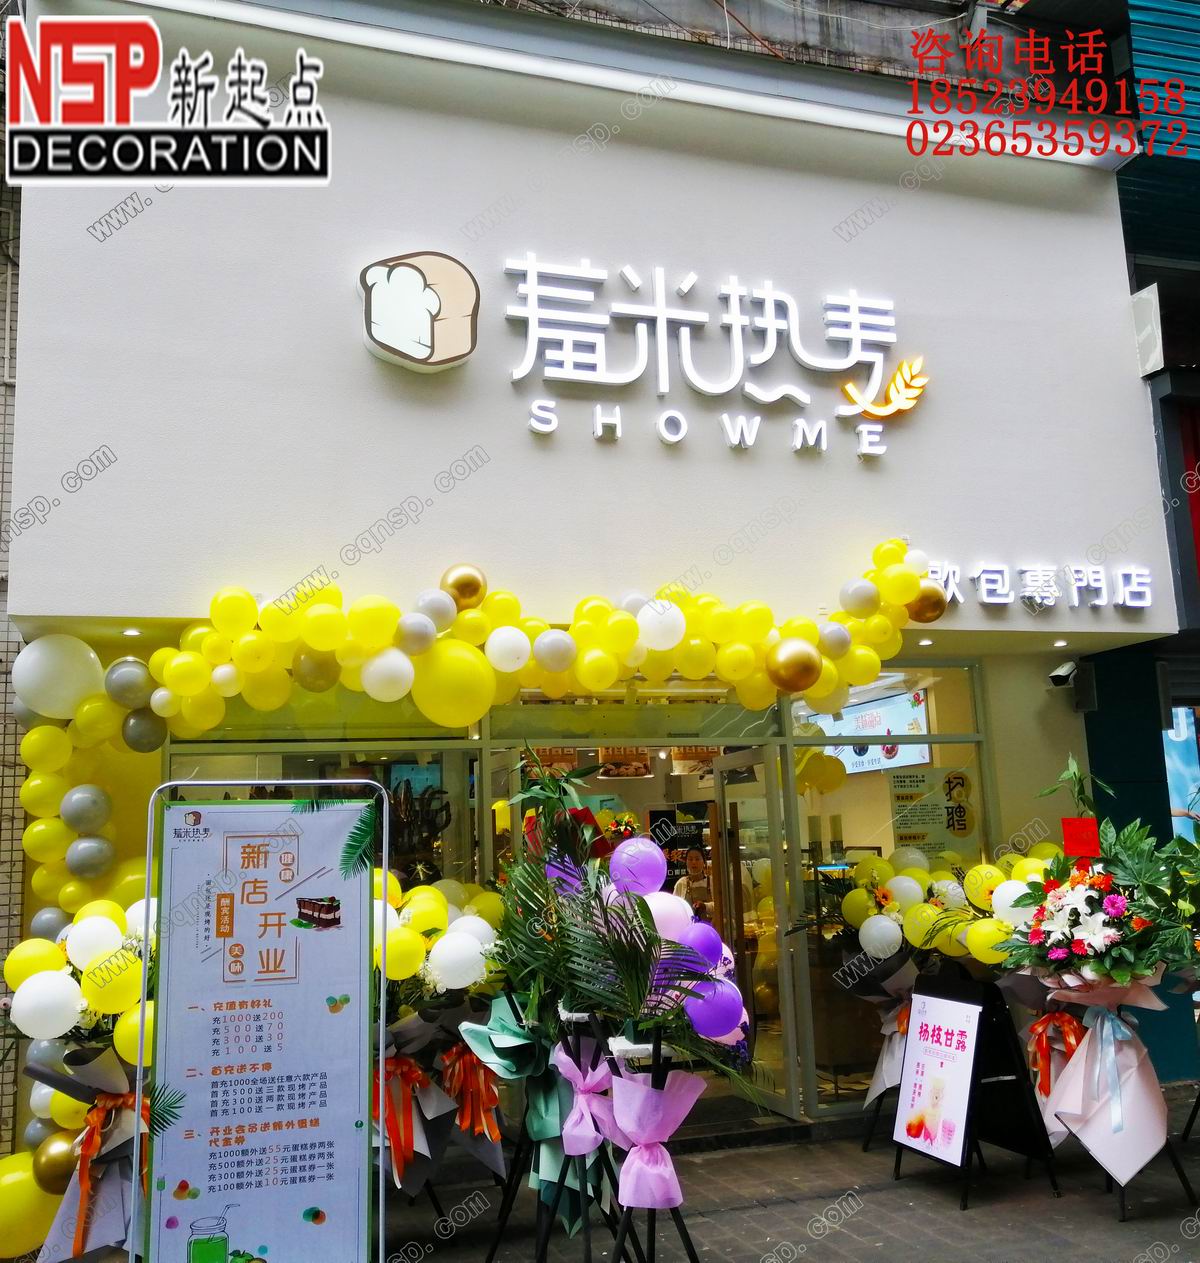 重庆羞米蛋糕店设计装修—渝北区狮子坪轻轨站旁